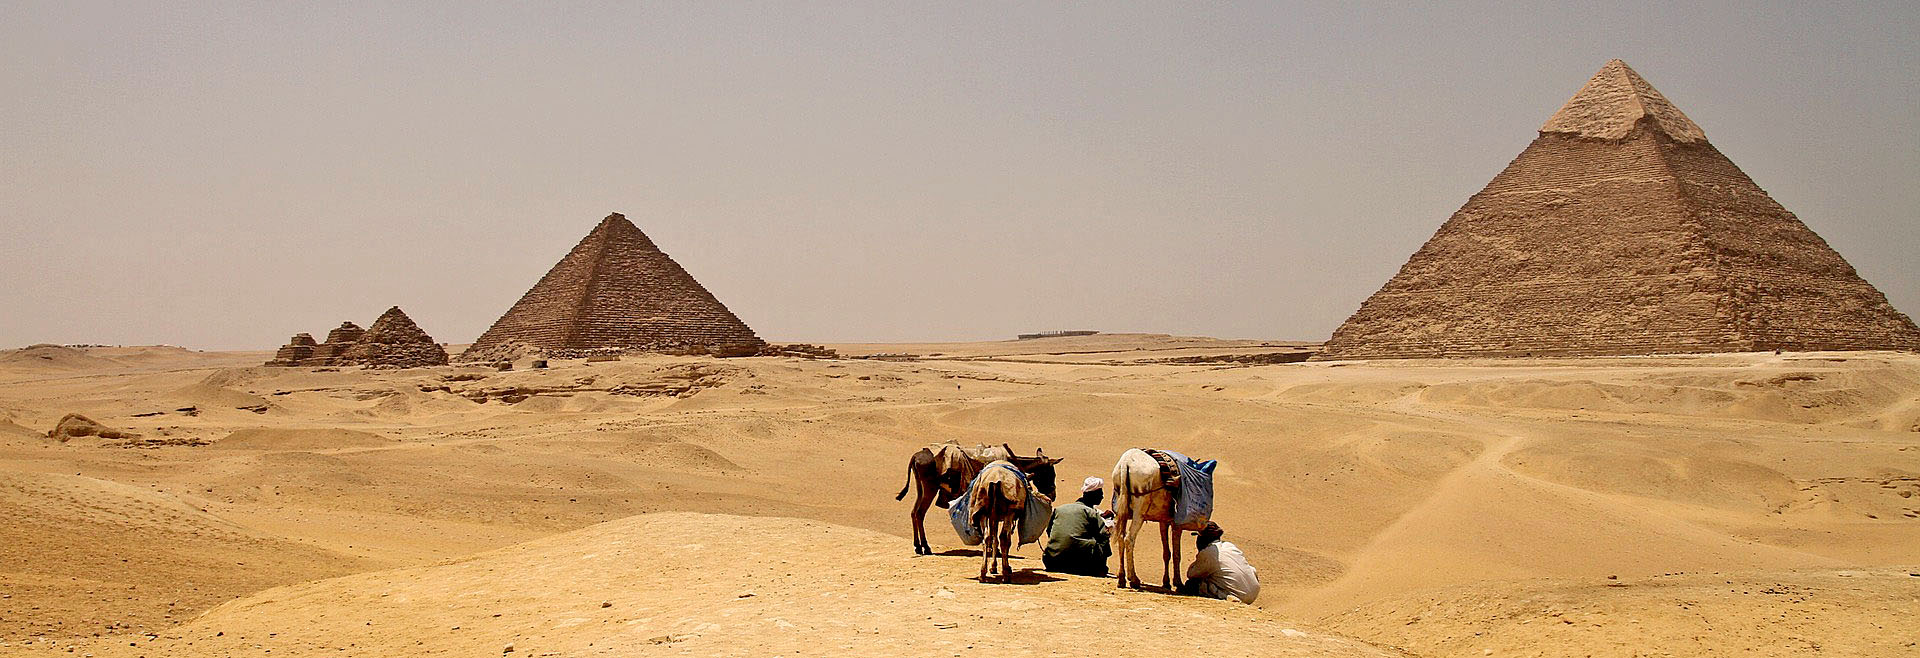 Geschichte hautnah erleben. Die imposante Erscheinung der Pyramiden von Gizeh.